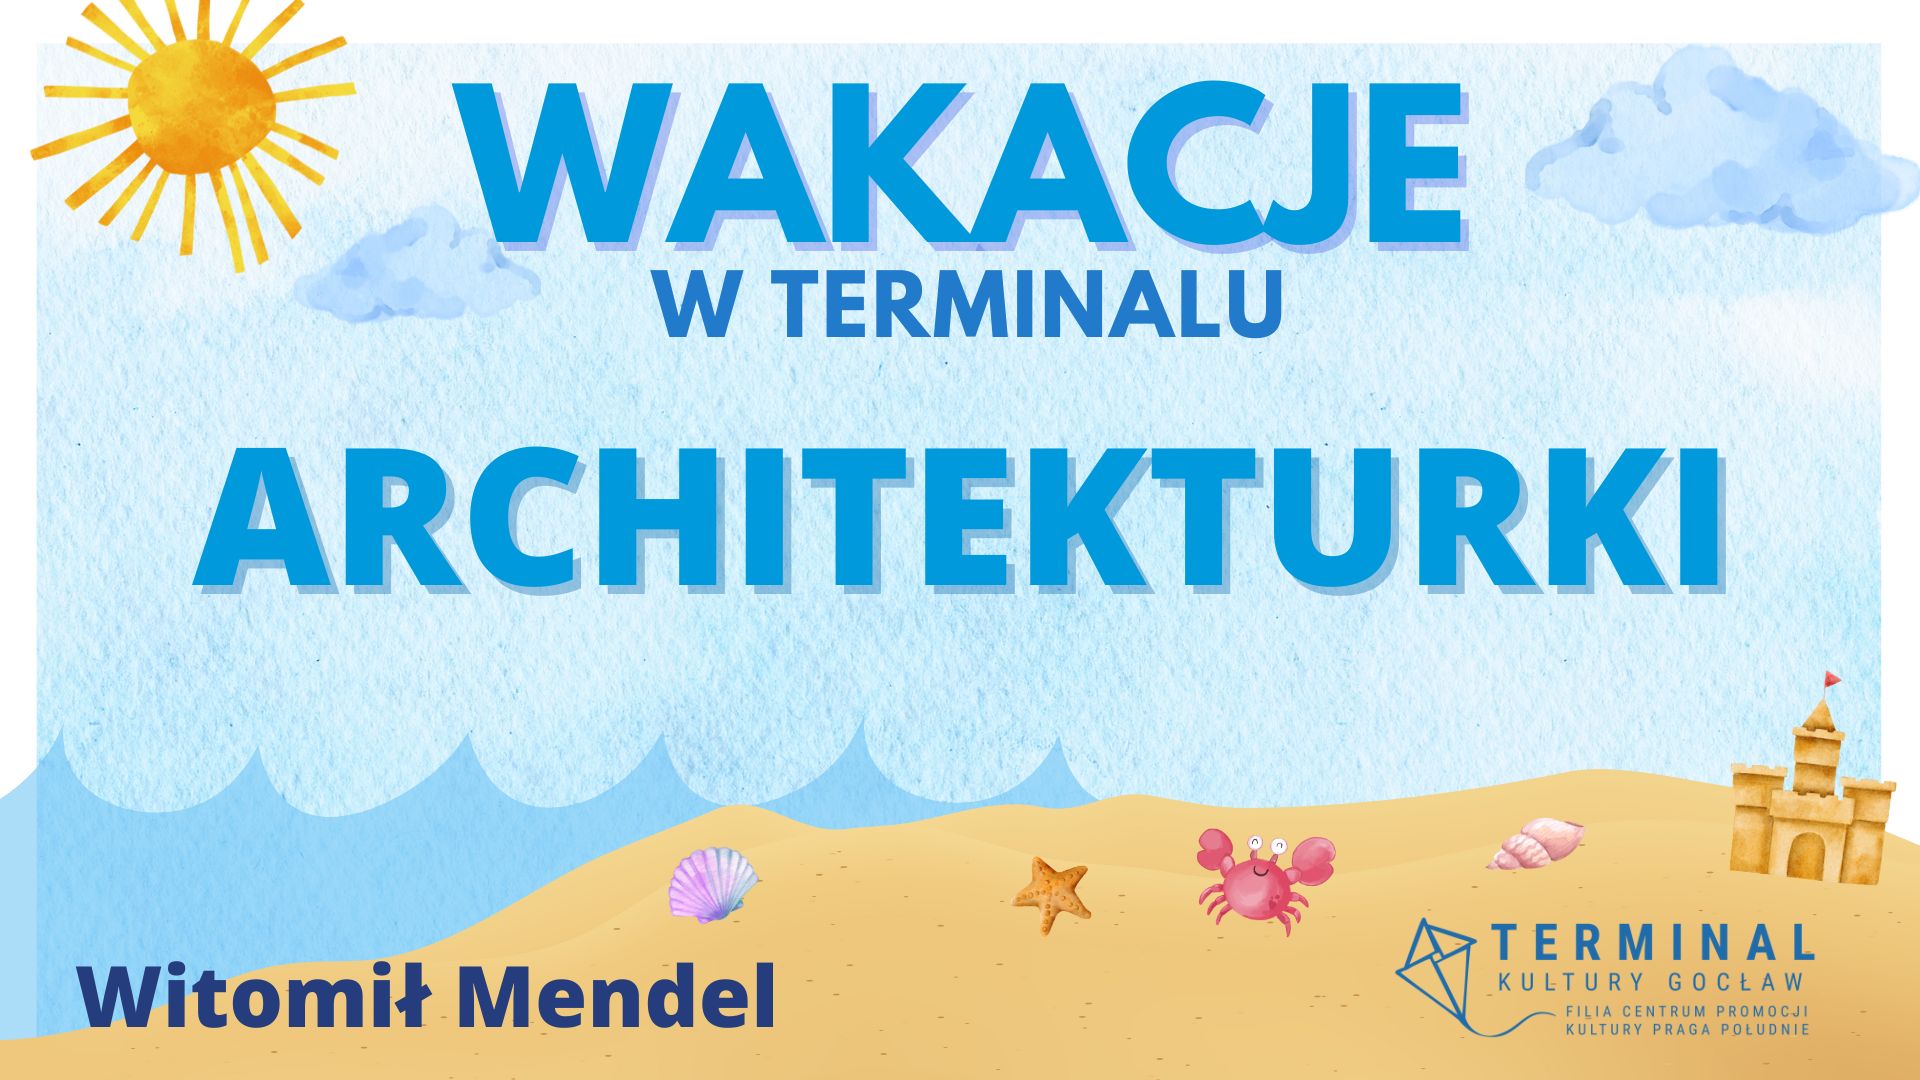 WAKACJE - ARCHITEKTURKI Witomił Mendel